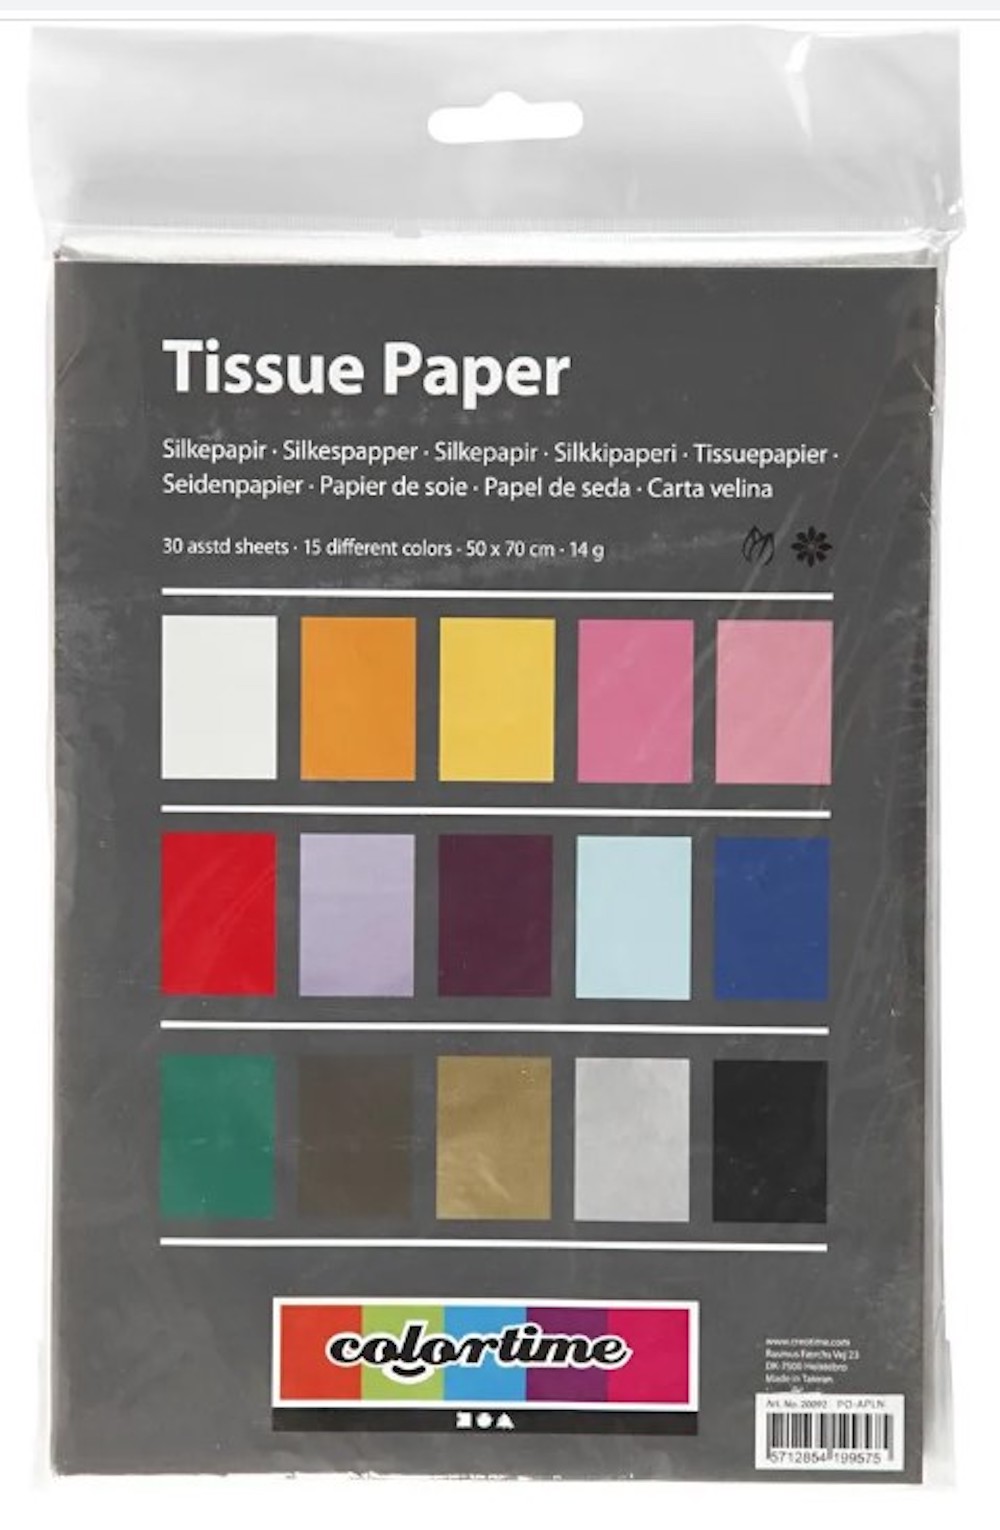 Seidenpapier, 50x70 cm, 17 g, Sortierte Farben, 15x2 Bl./ 1 Pck.